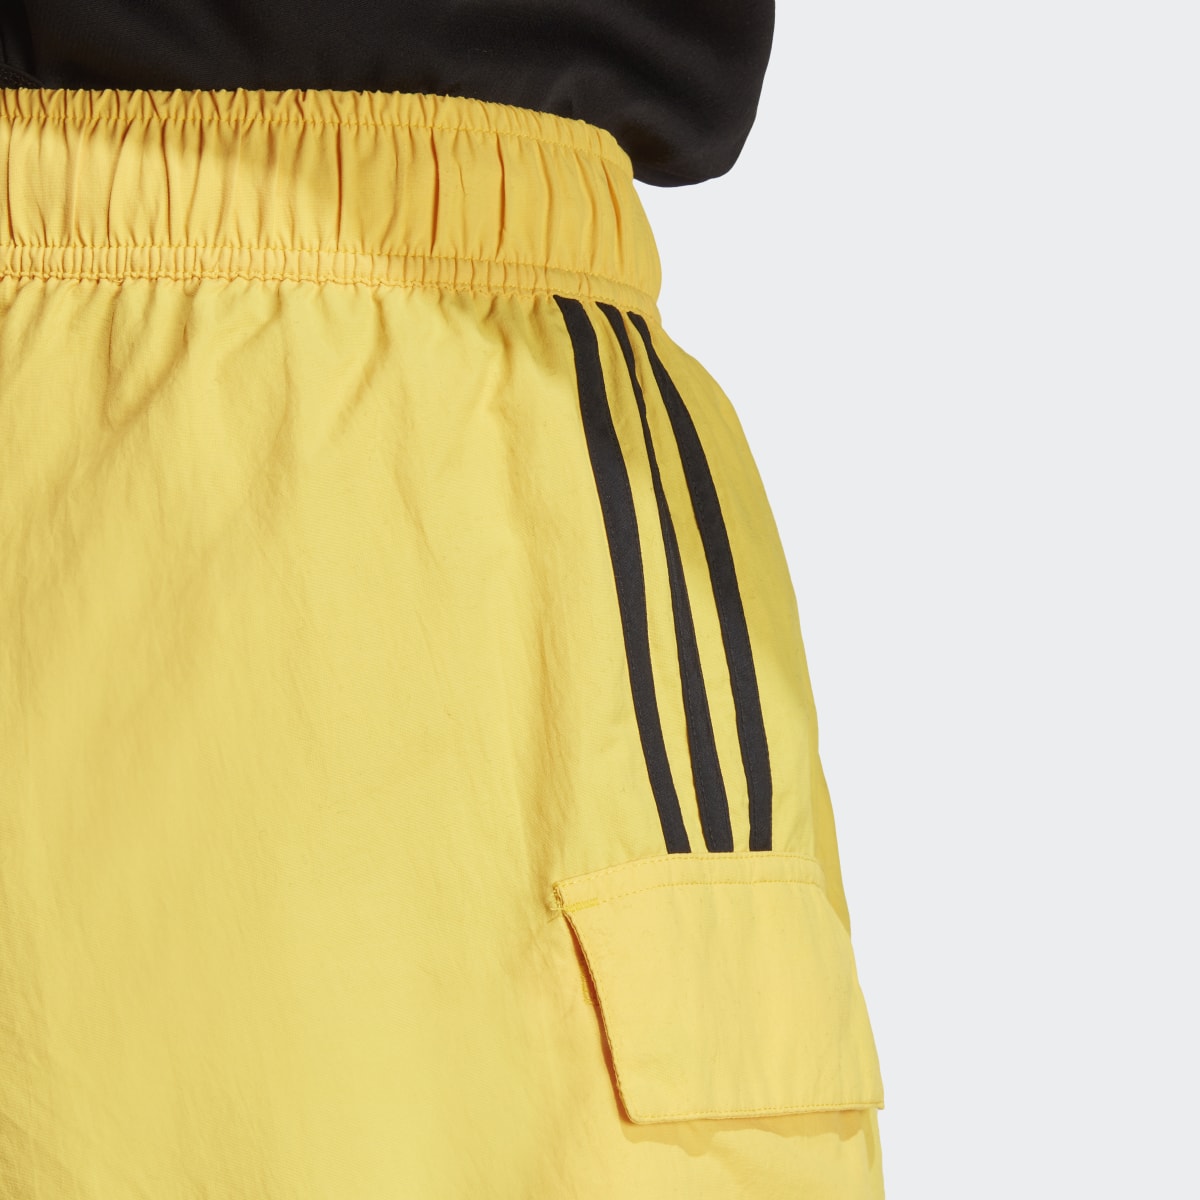 Adidas Dance Woven Cargo Shorts. 6